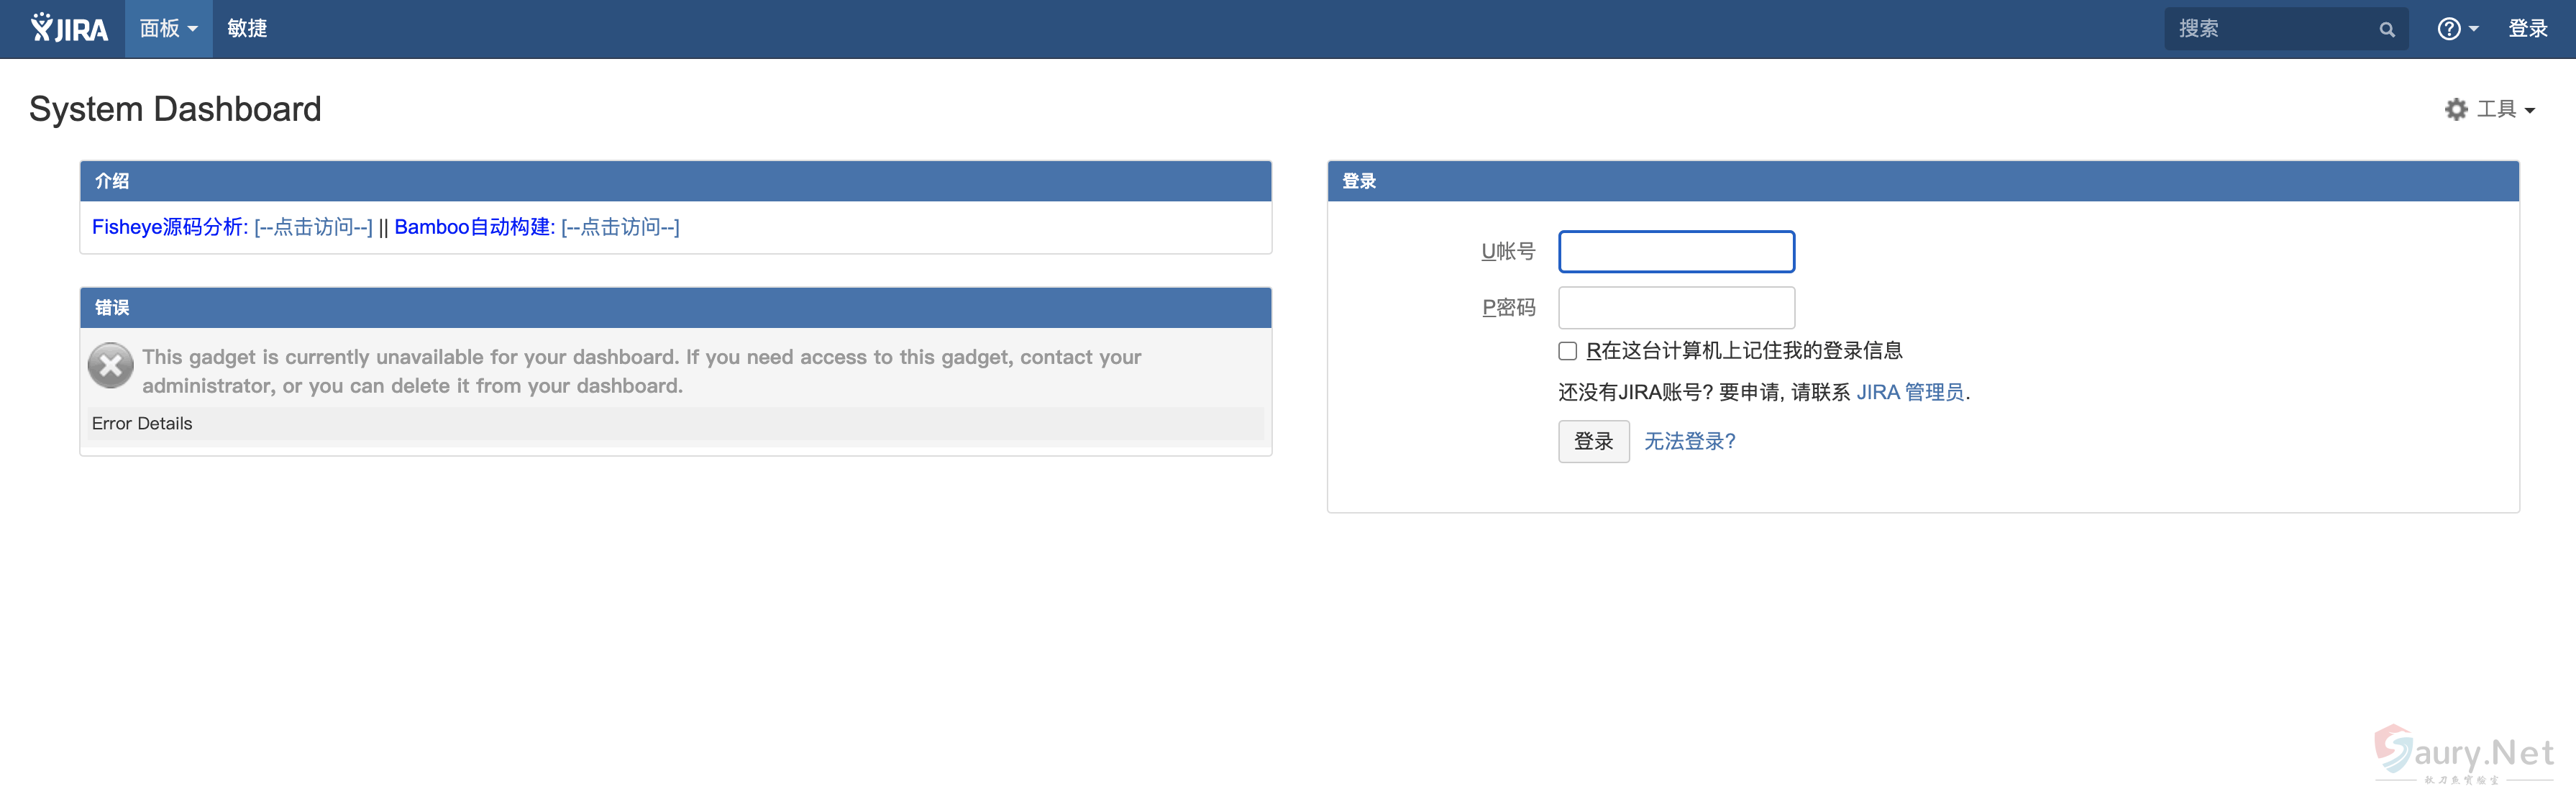 Atlassian Jira com.atlassian.jira 敏感信息泄漏 #CVE-2019-8442-秋刀鱼实验室